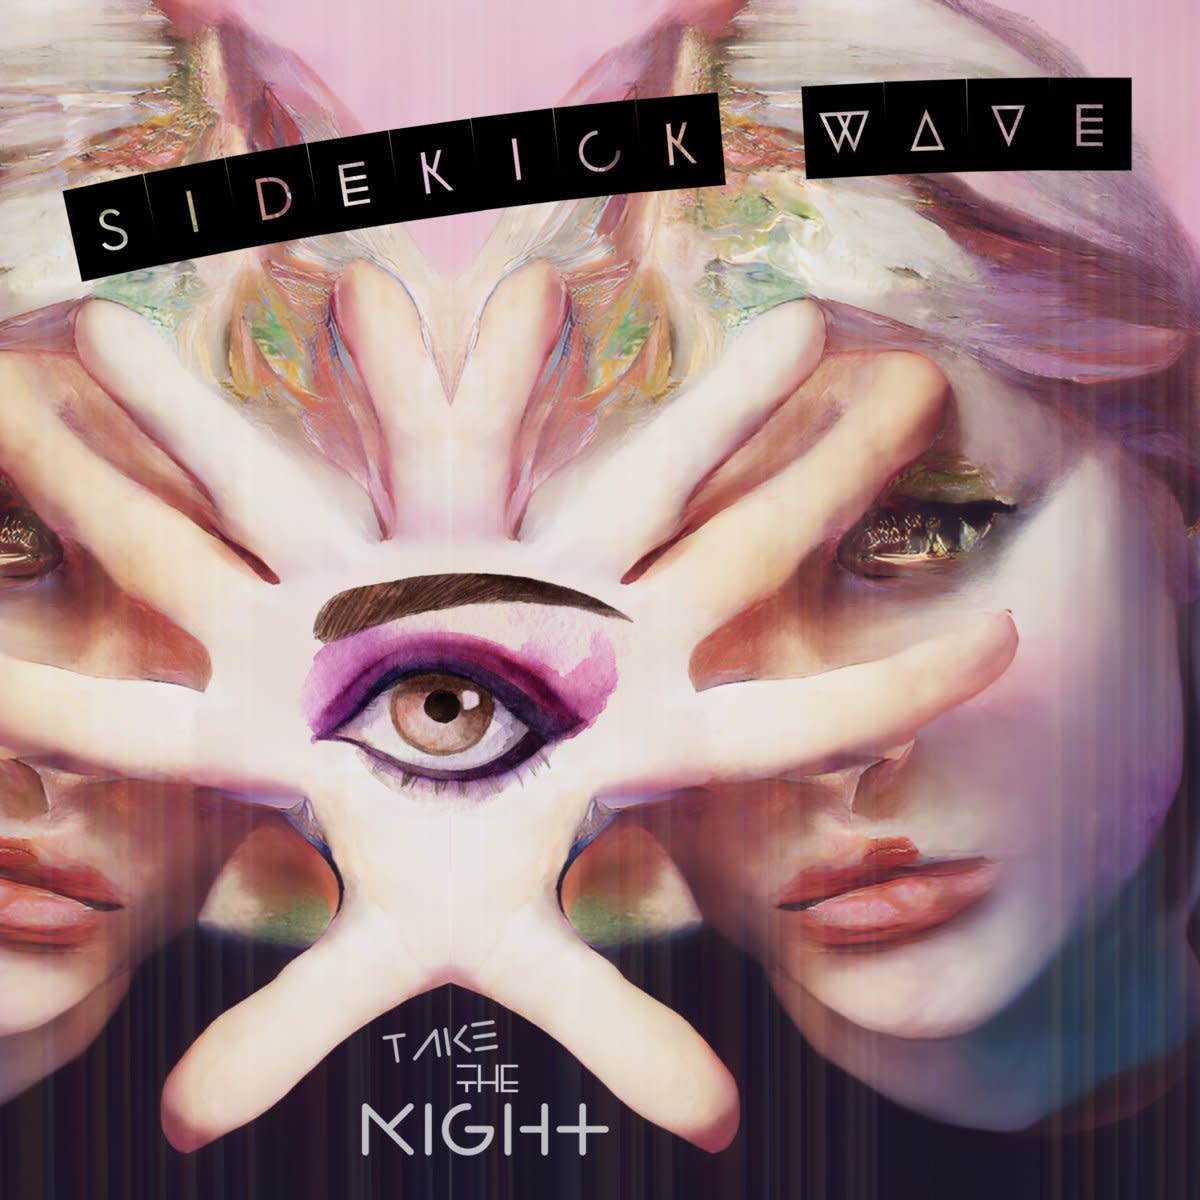 Sidekick Wave – "Take The Night In Hand" (Maxi-Single, 2022)